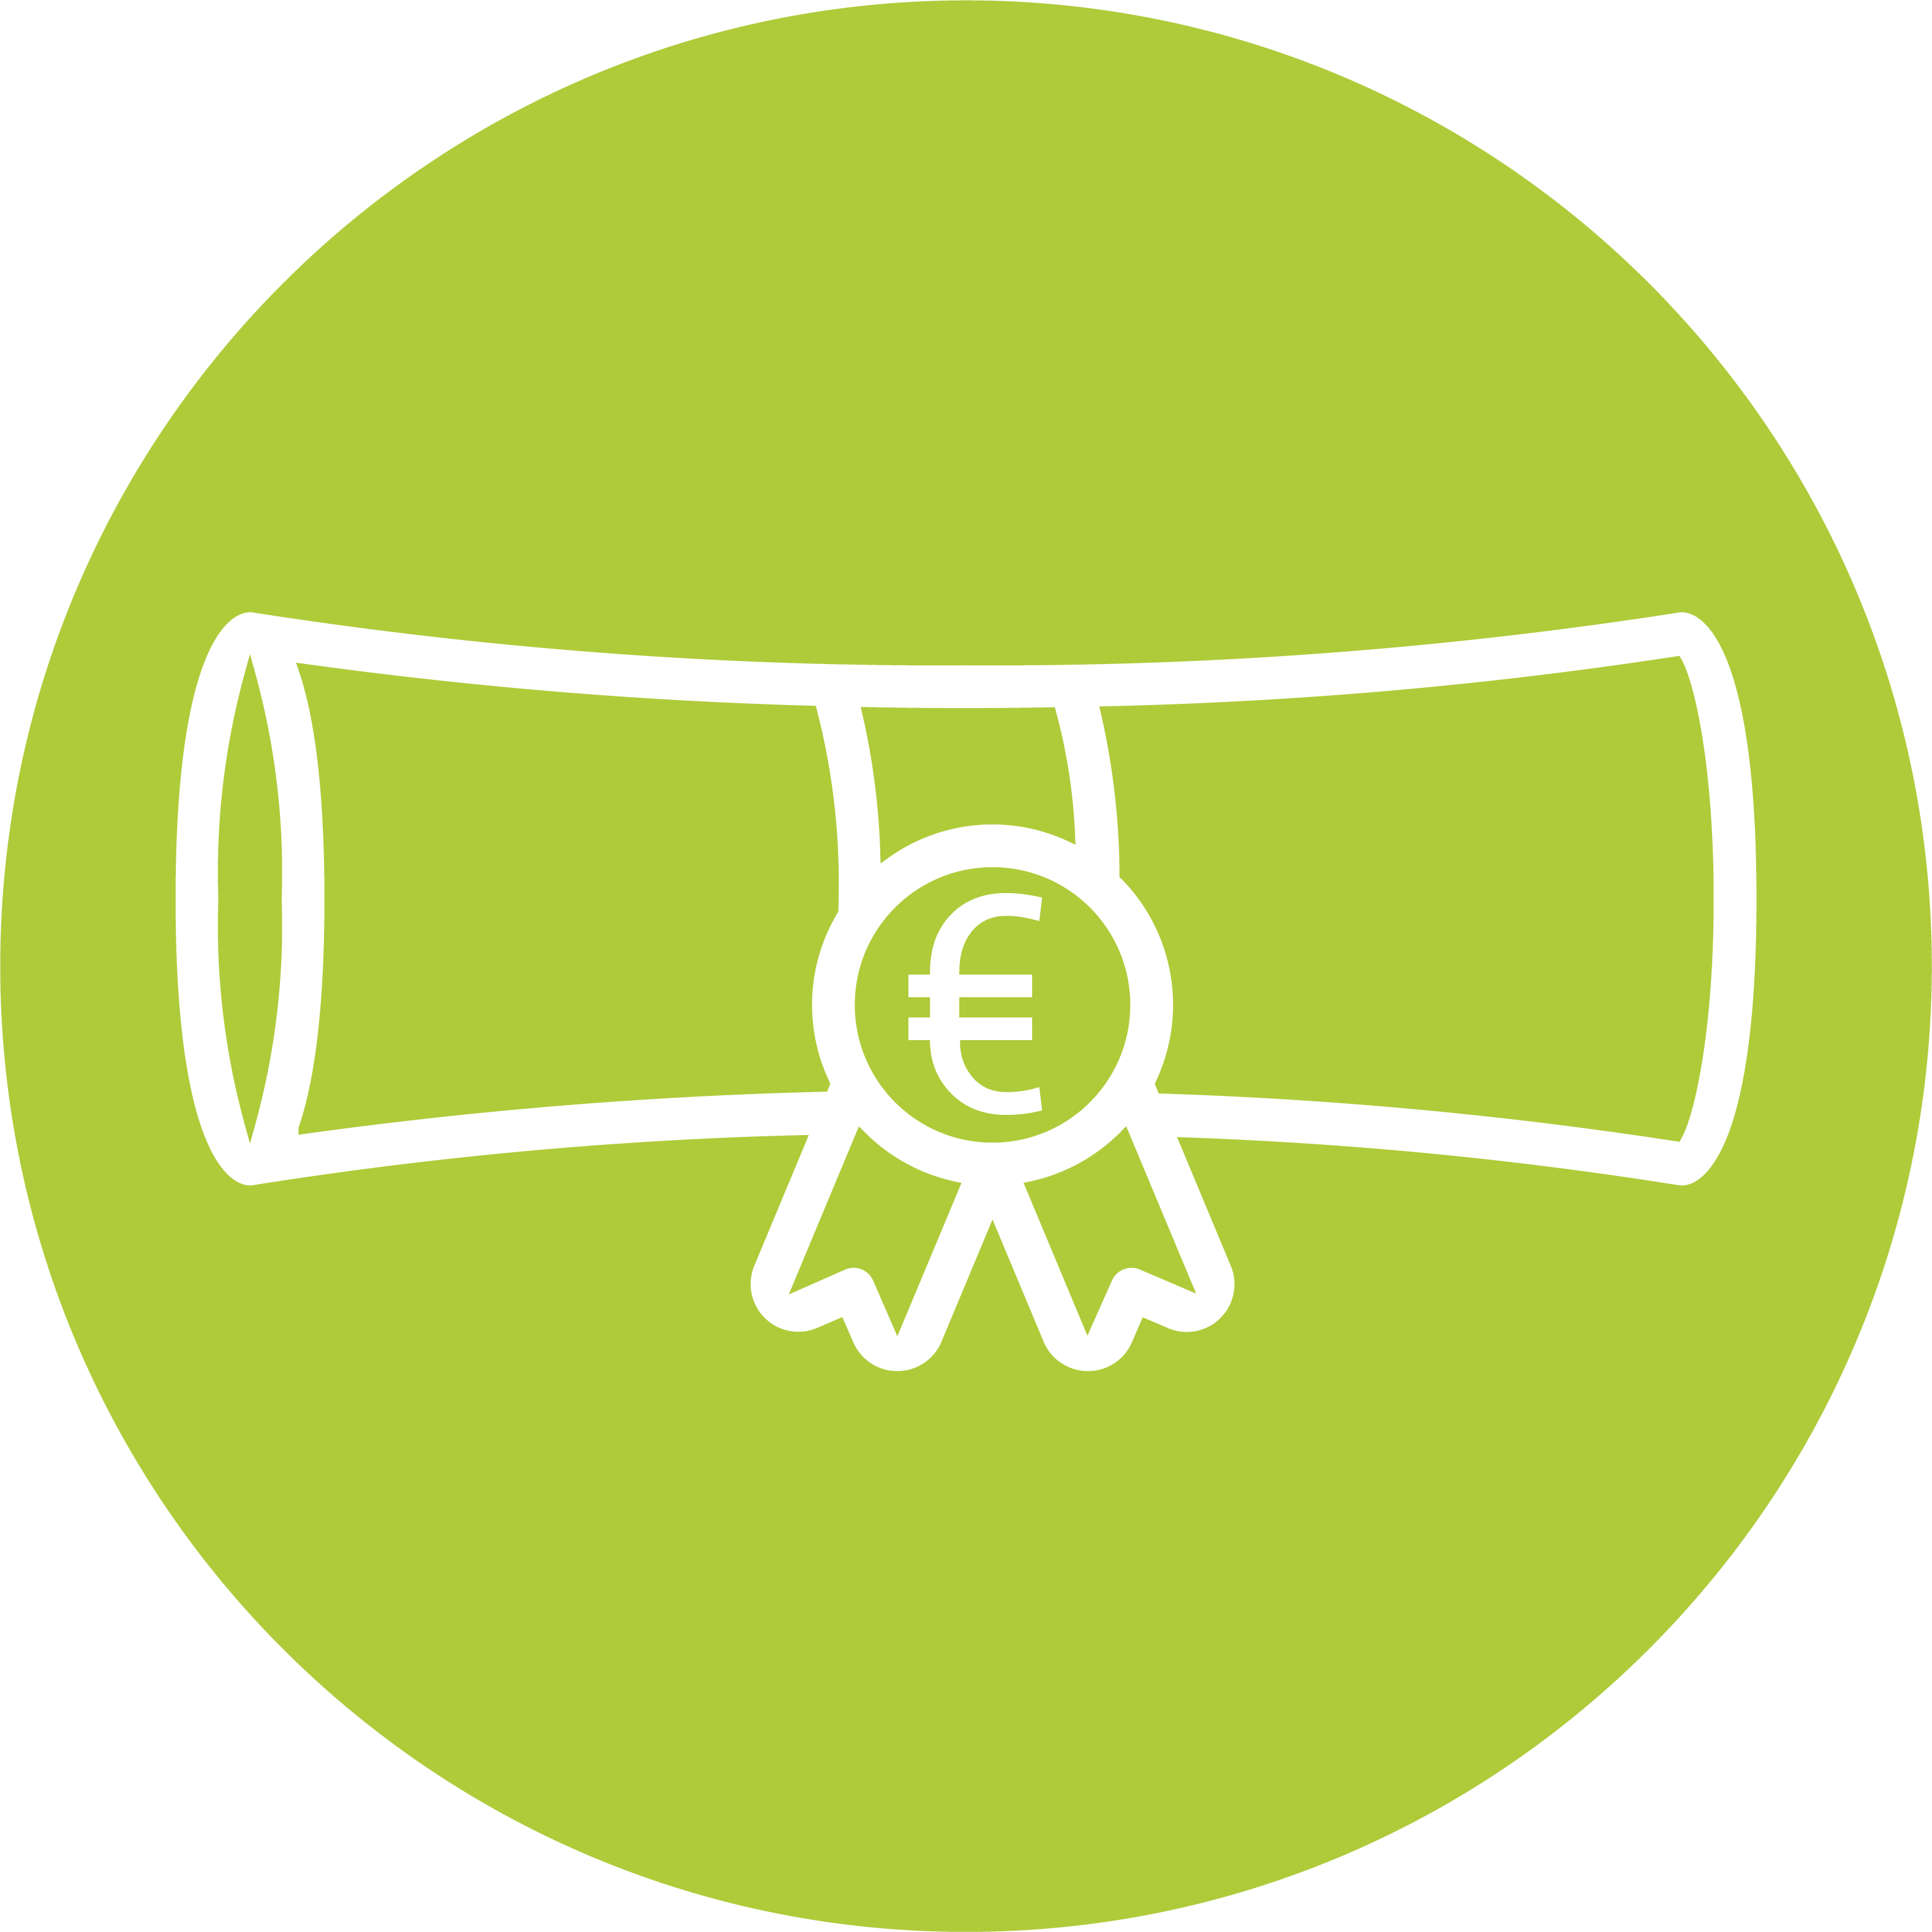 Icon eines zusammgerollten Diploms oder Zertifikats mit einem Euro-Zeichen in Weiß auf einem grünen kreisförmigen Hintergrund.